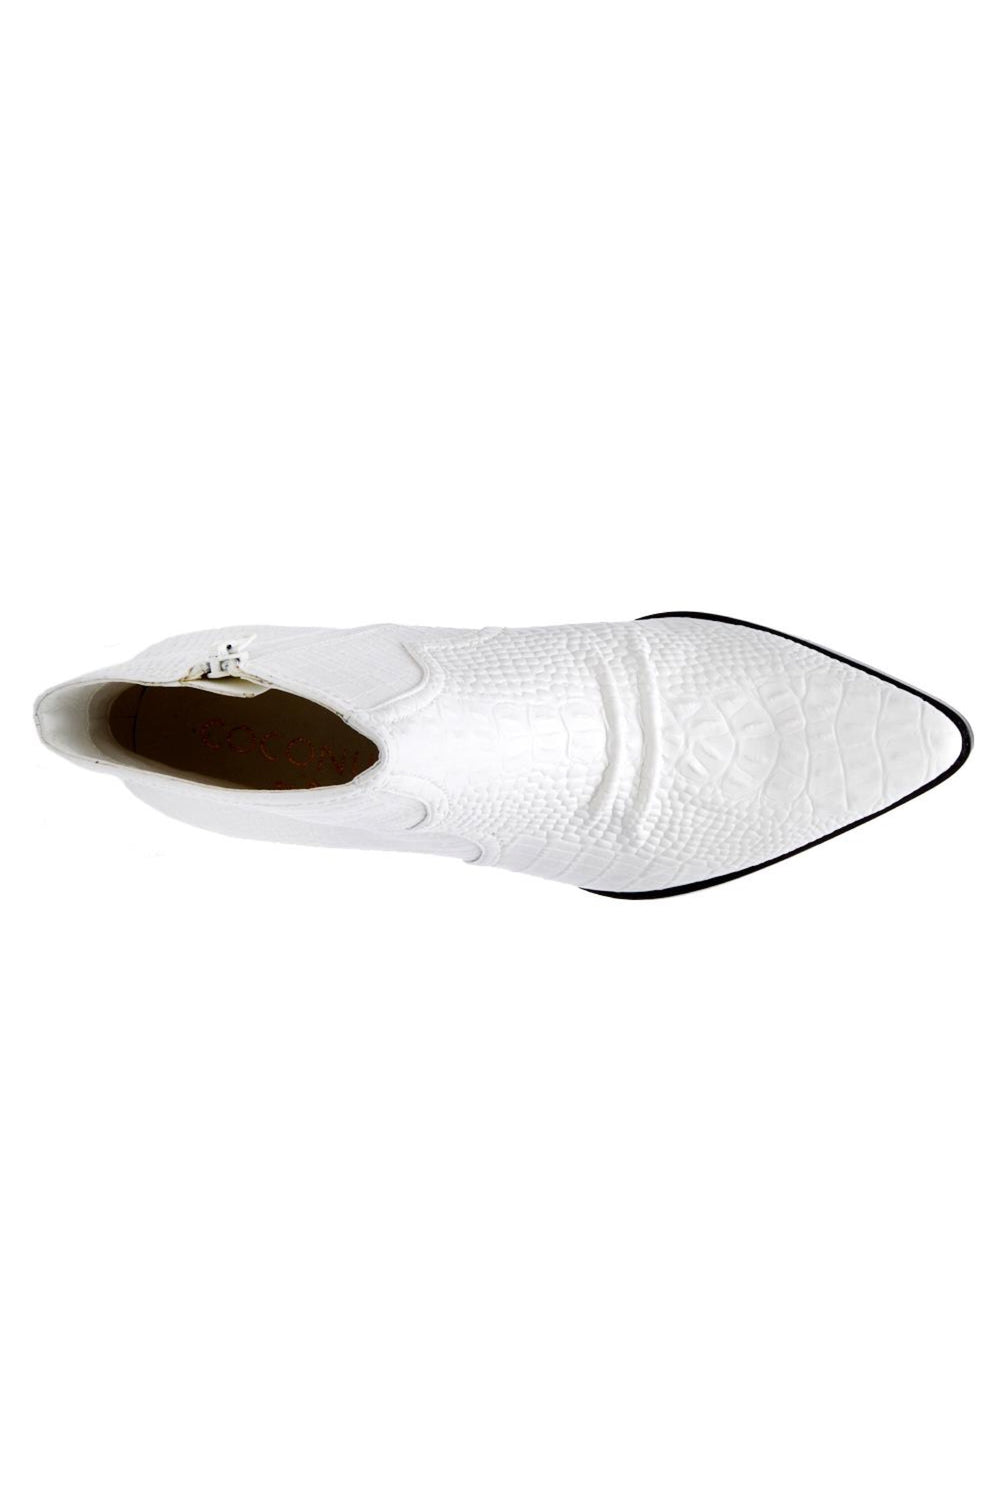 White Devon Boot